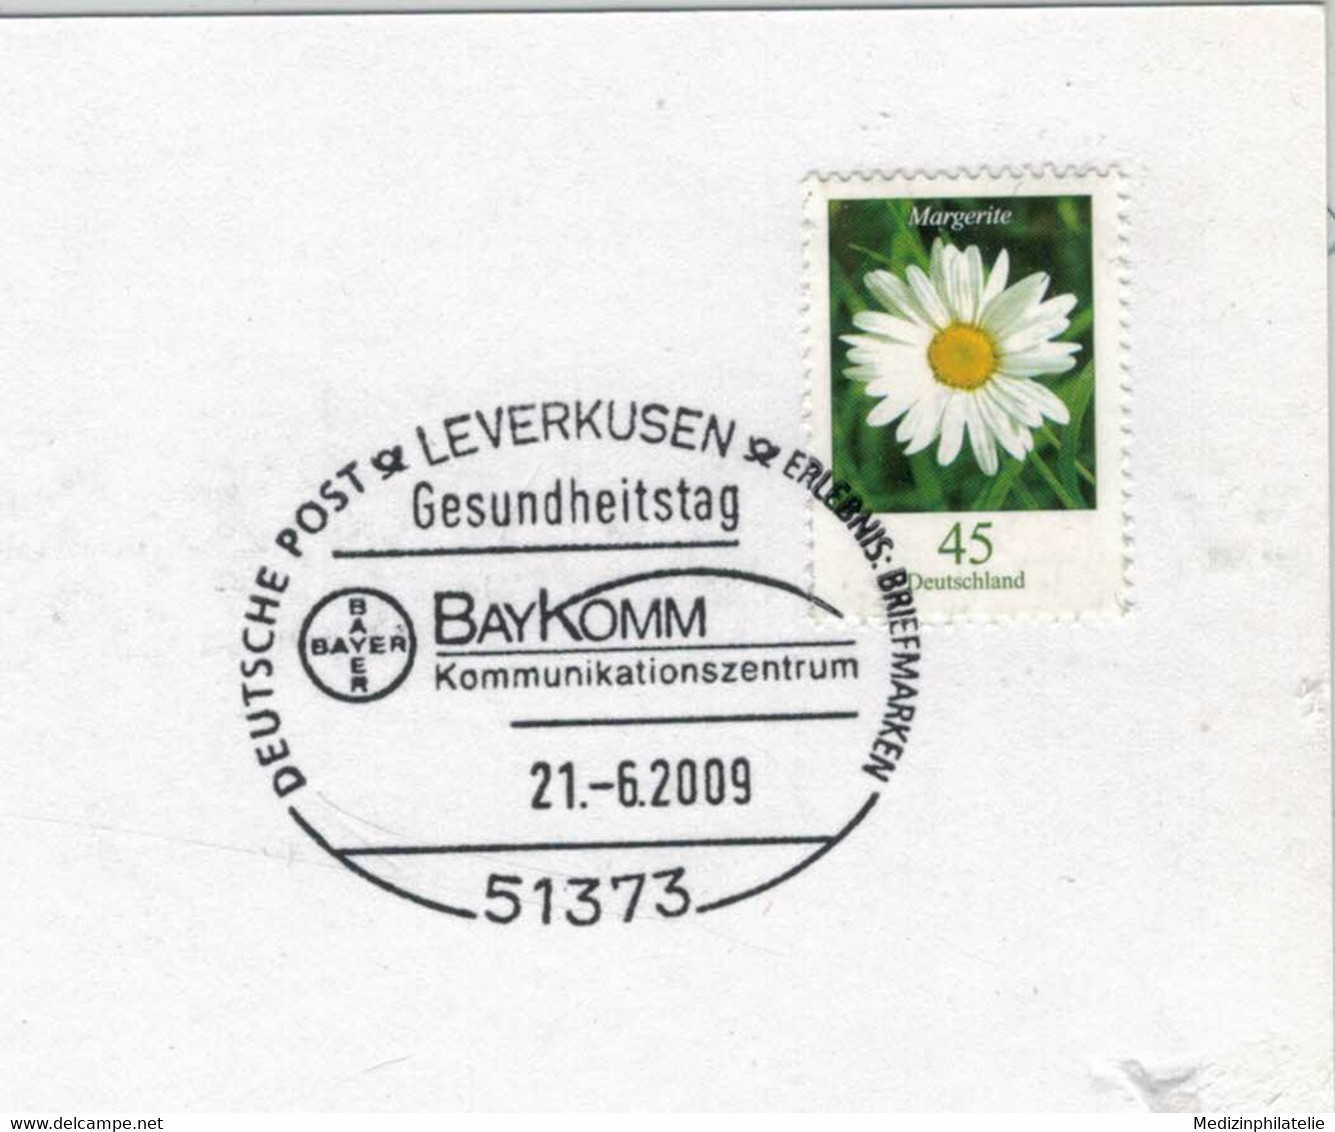 51373 Leverkusen - Bayer Baykomm Kommunikationszentrum Gesundheitstag 2009 - Pharmacy